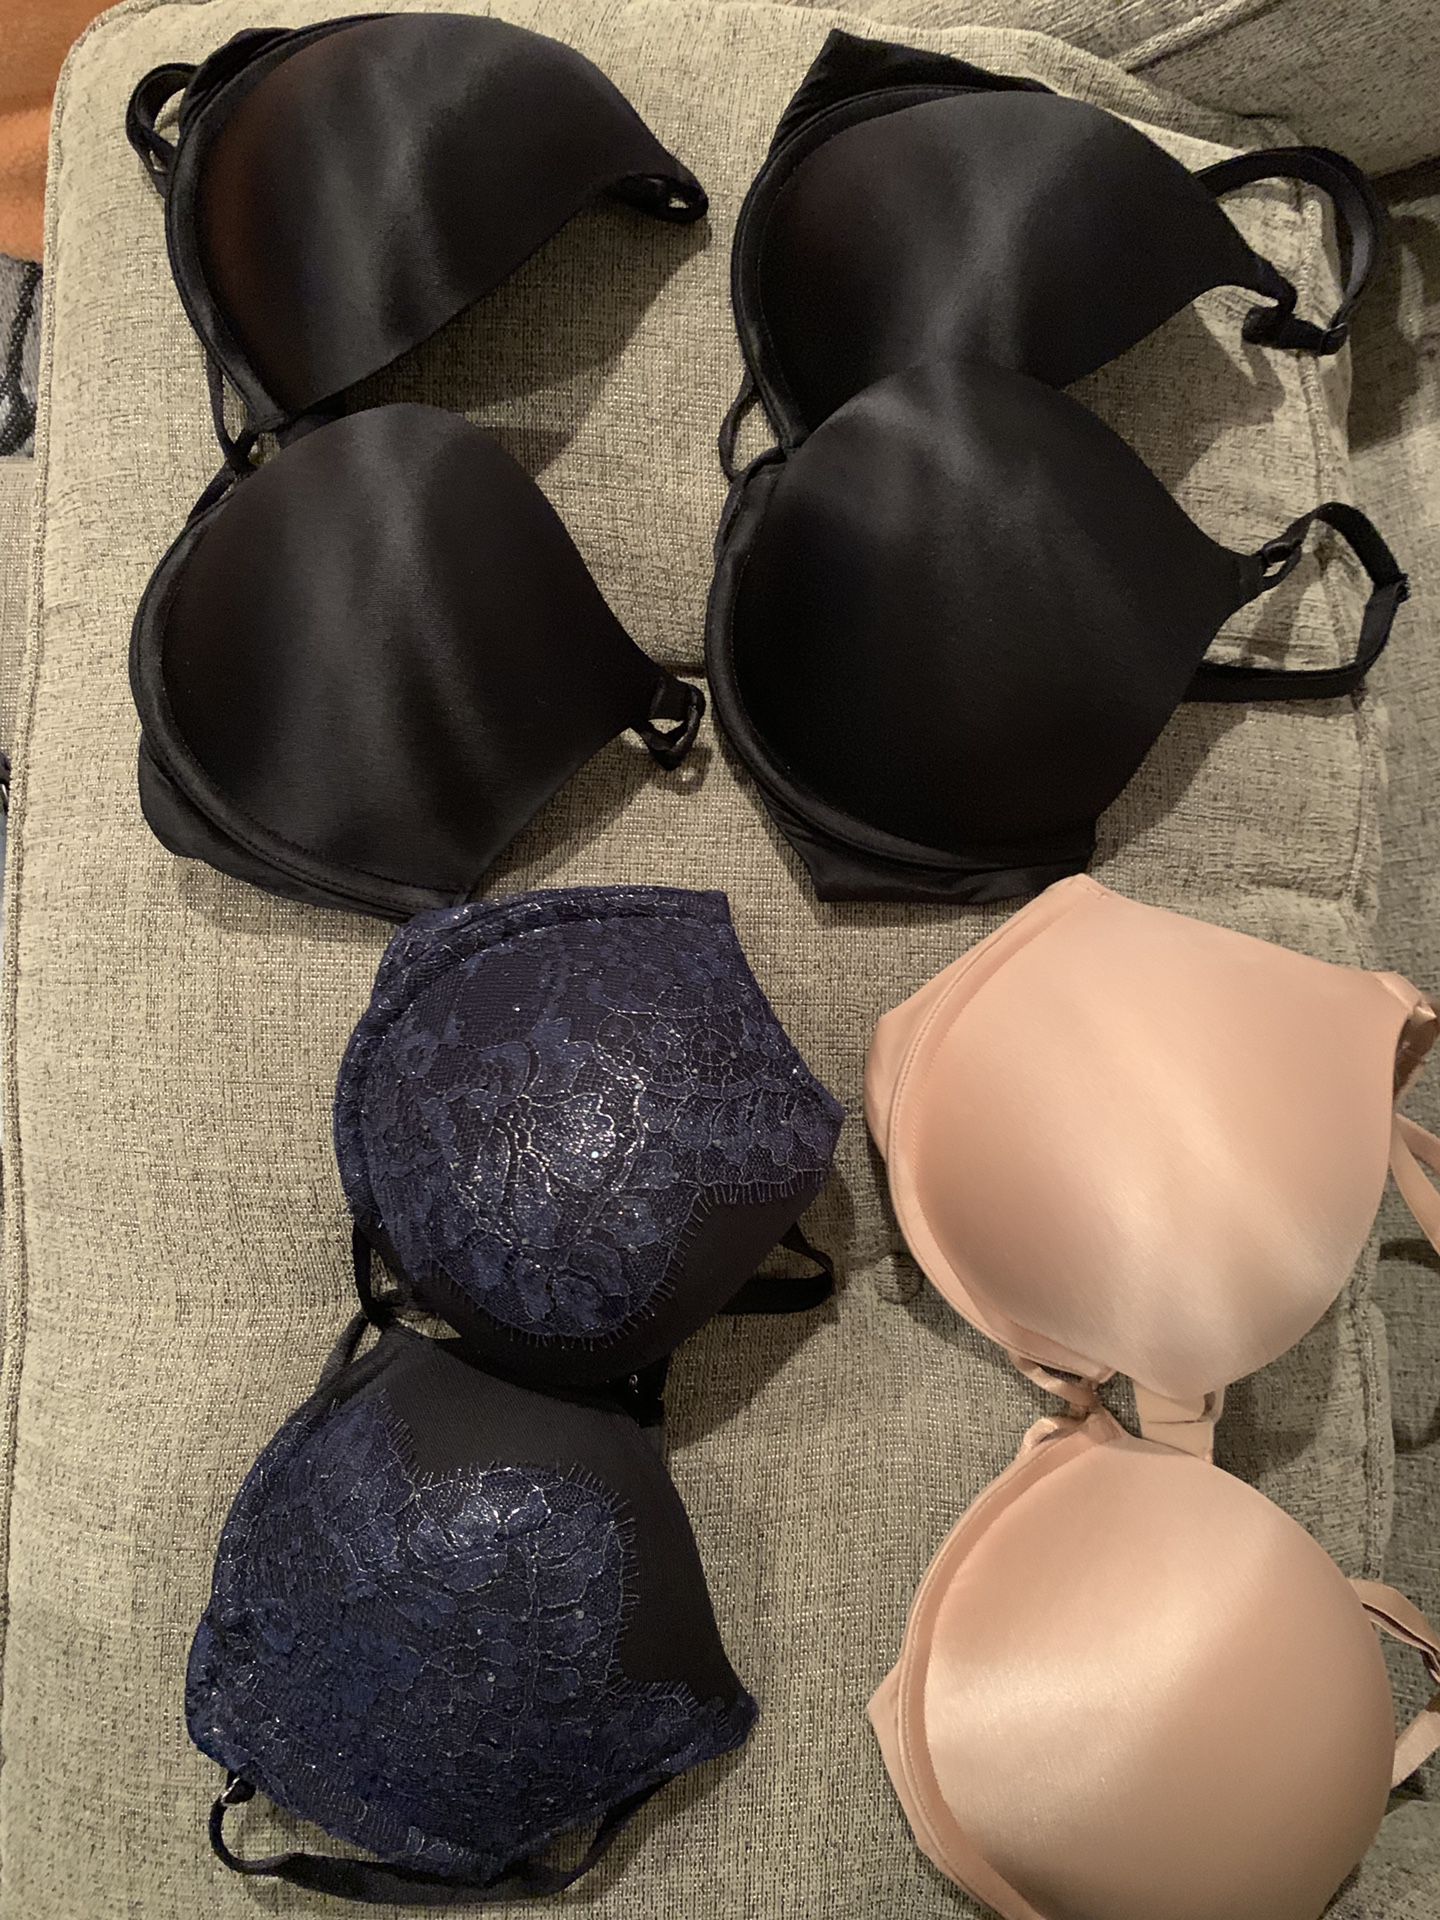 Victoria's Secret bombshell bra for Sale in Pico Rivera, CA - OfferUp